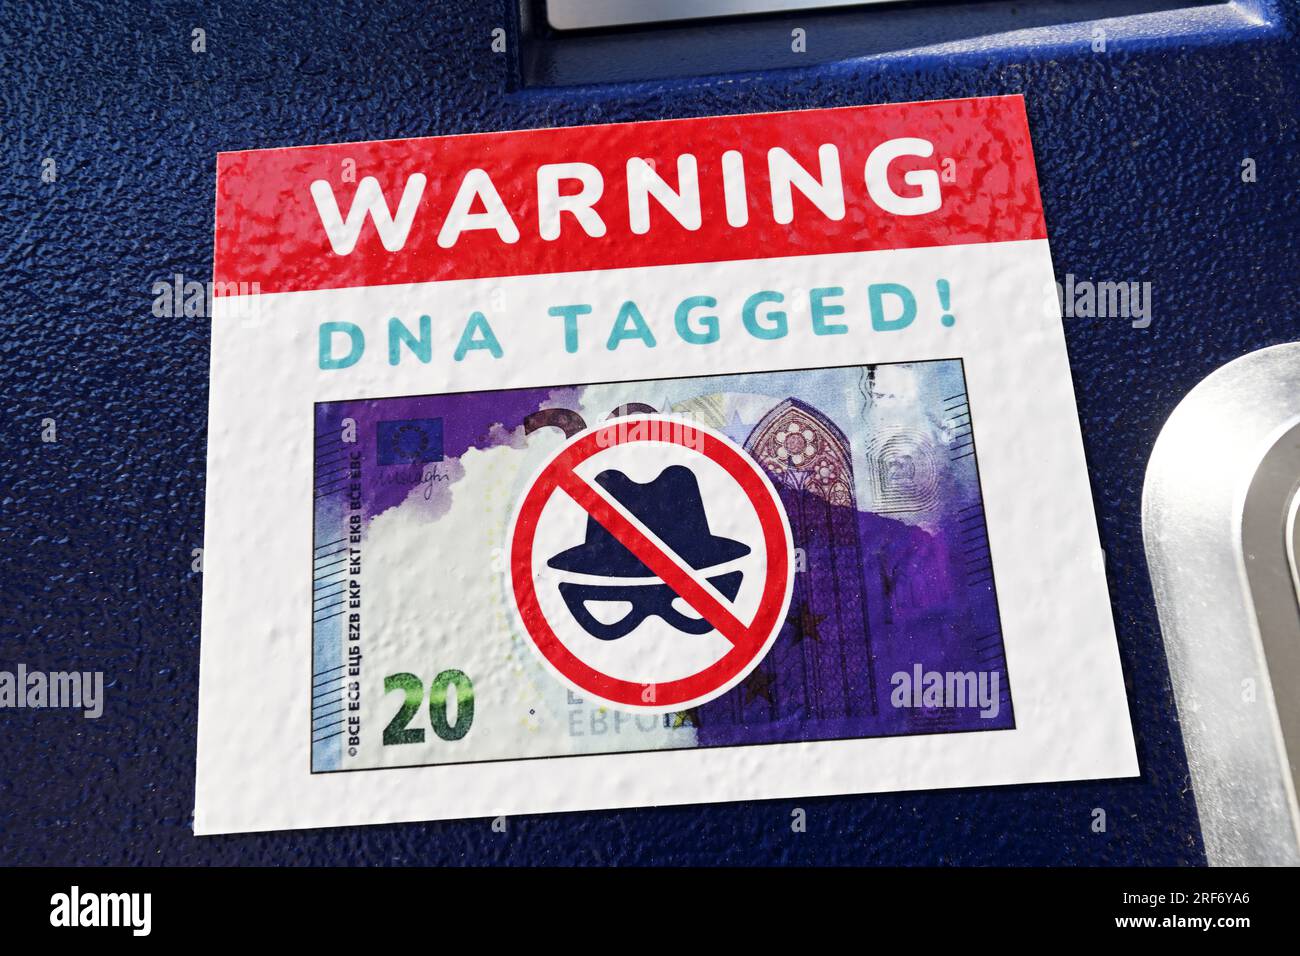 Warnaufkleber für einen mit Farbbomben und künstlicher DNA gesicherten Fahrscheinautomaten Stock Photo